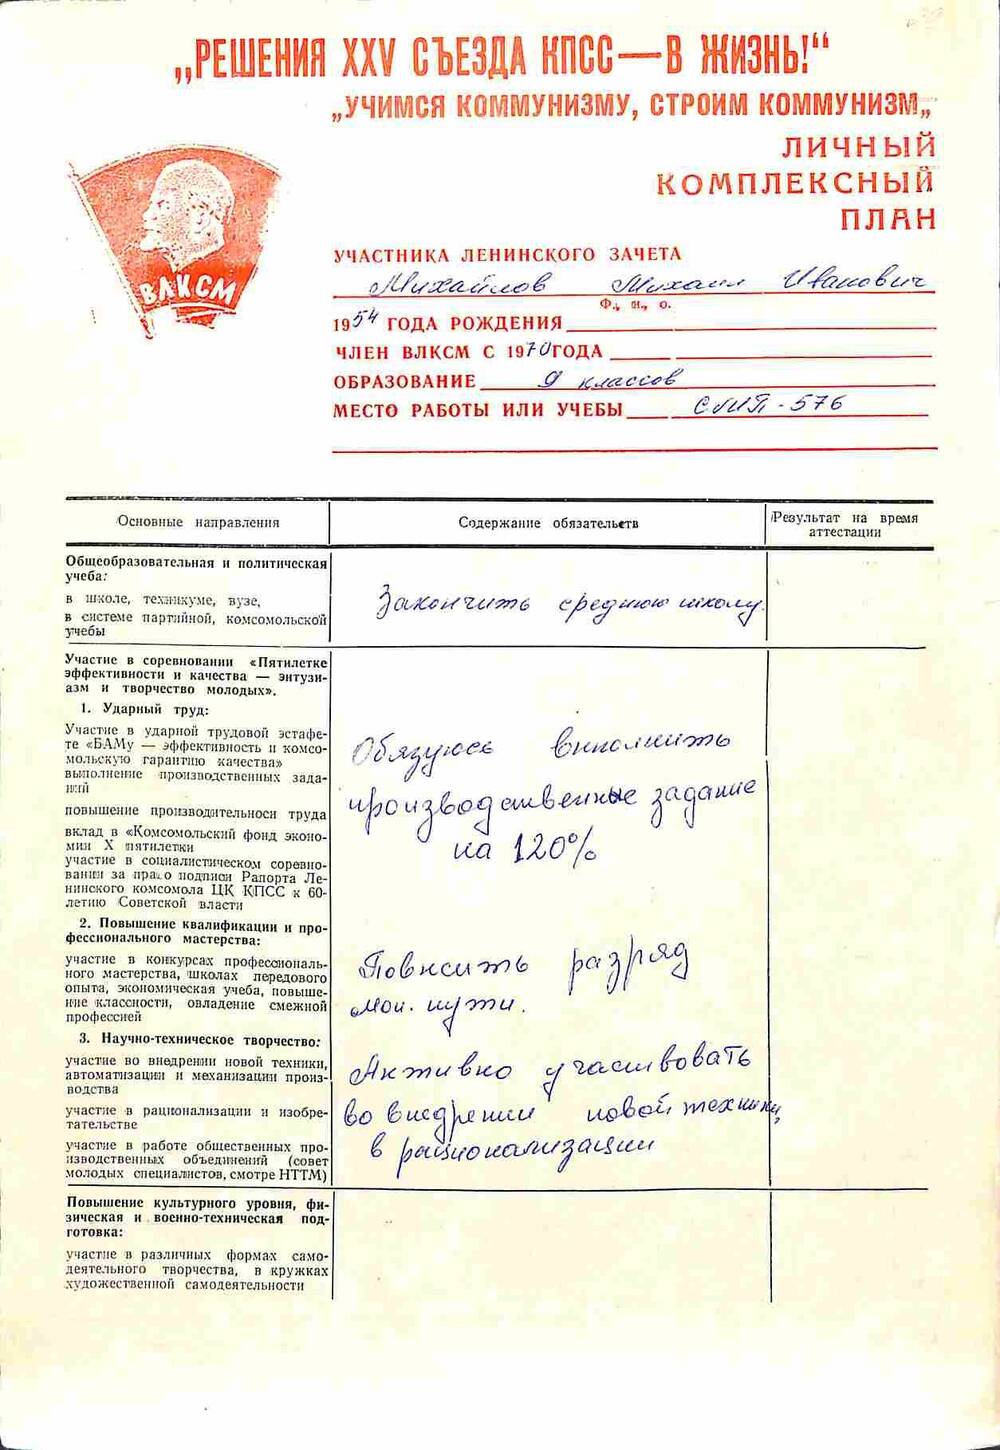 Личный комплексный план участника ленинского зачёта Михайлова Михаила Ивановича, члена бригады Новика В.Г.